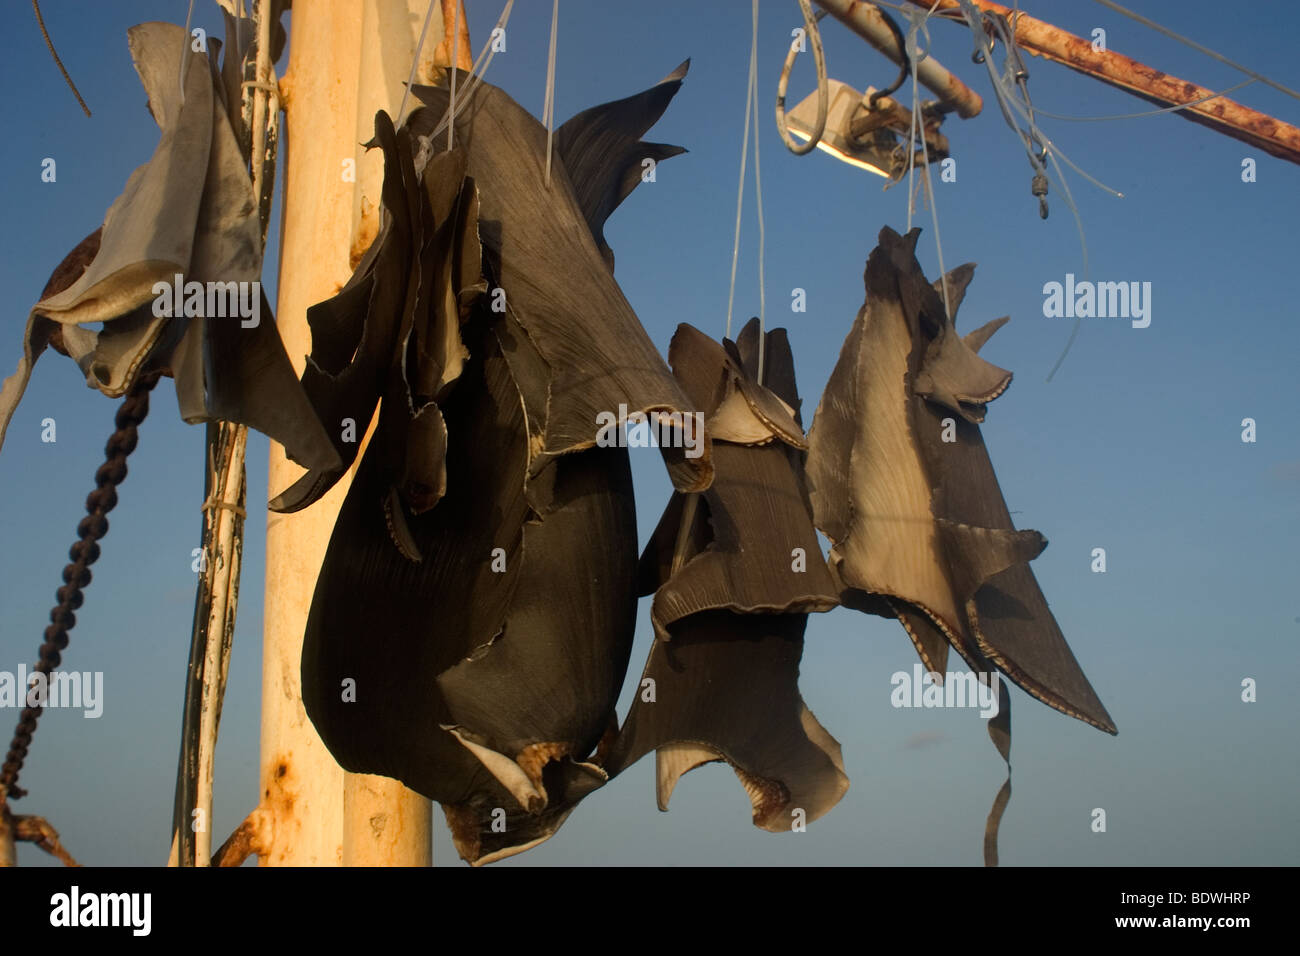 Shark fins sun drying on commercial fishing vessel, Brazil, Atlantic Ocean  Stock Photo